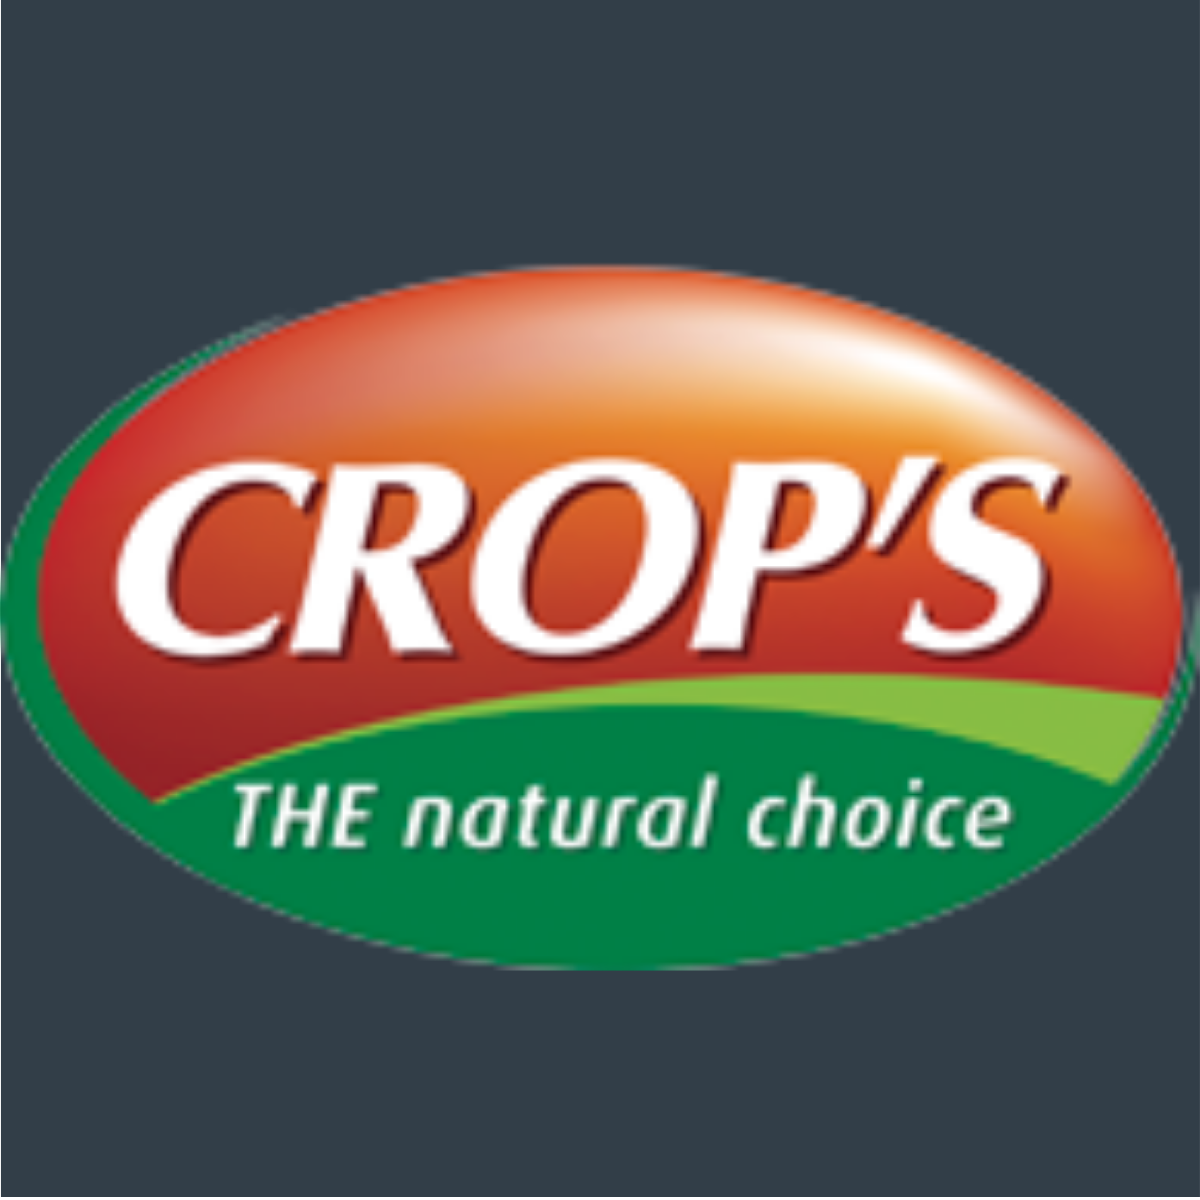 Crop's